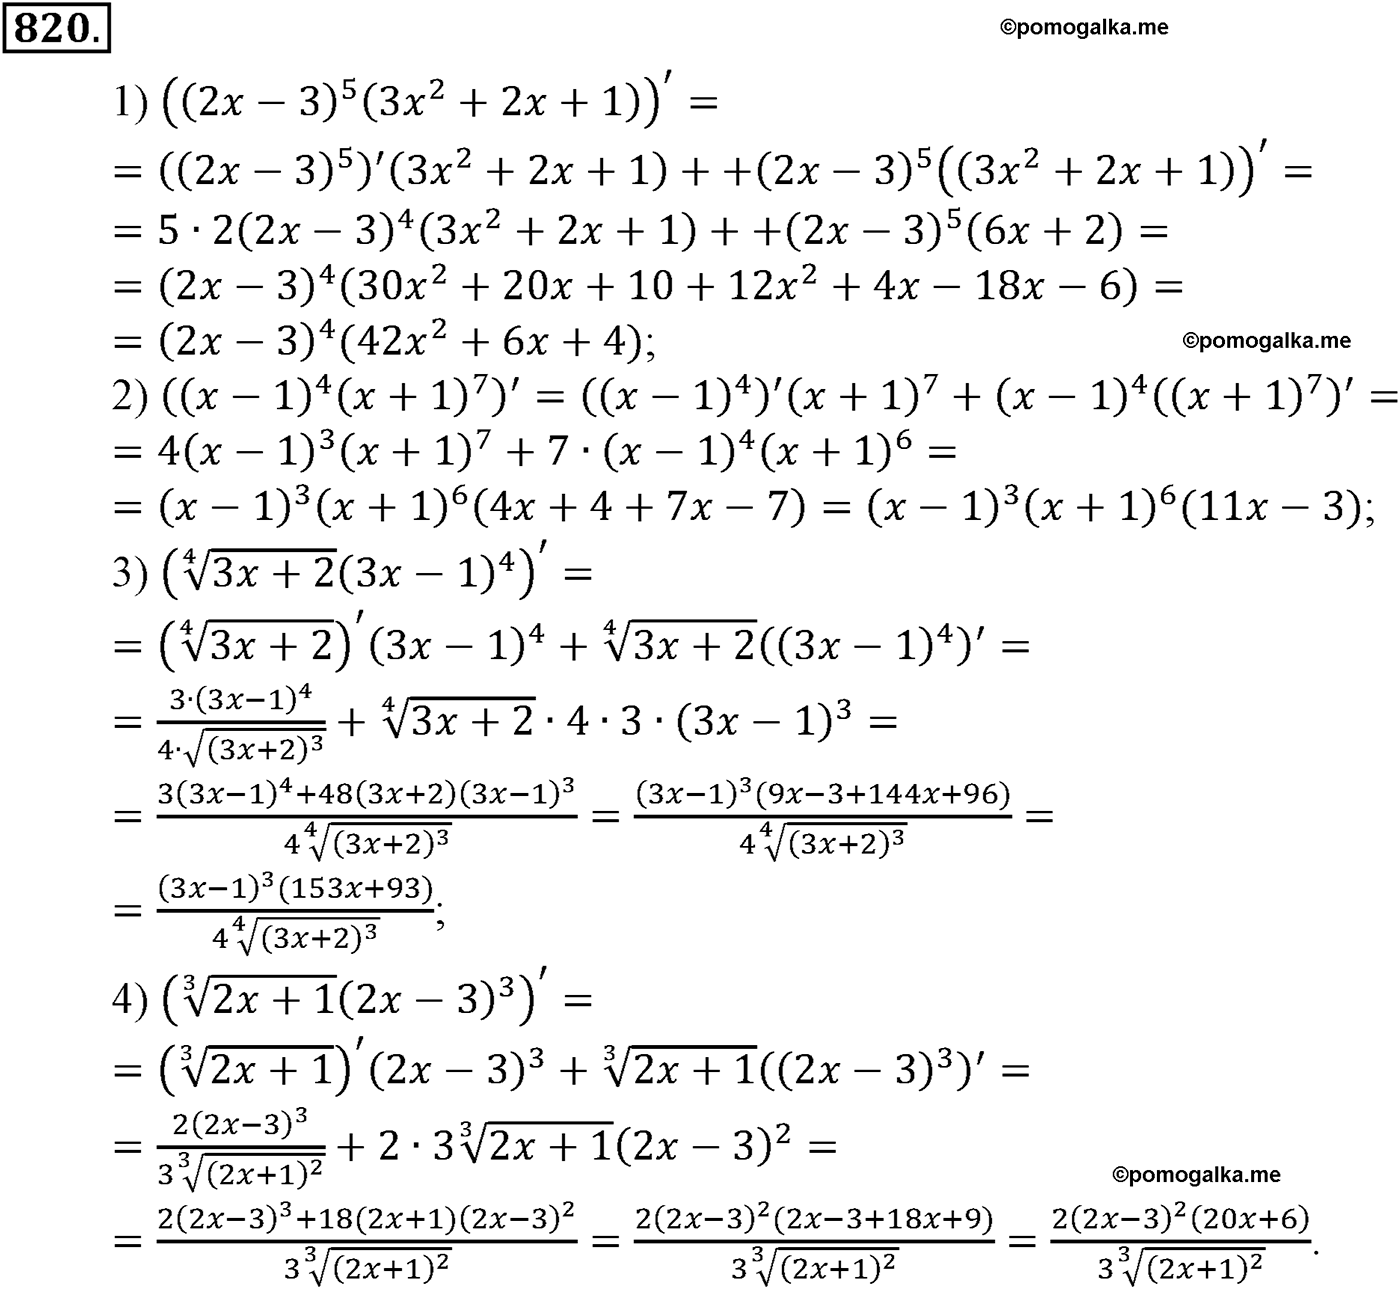 разбор задачи №820 по алгебре за 10-11 класс из учебника Алимова, Колягина